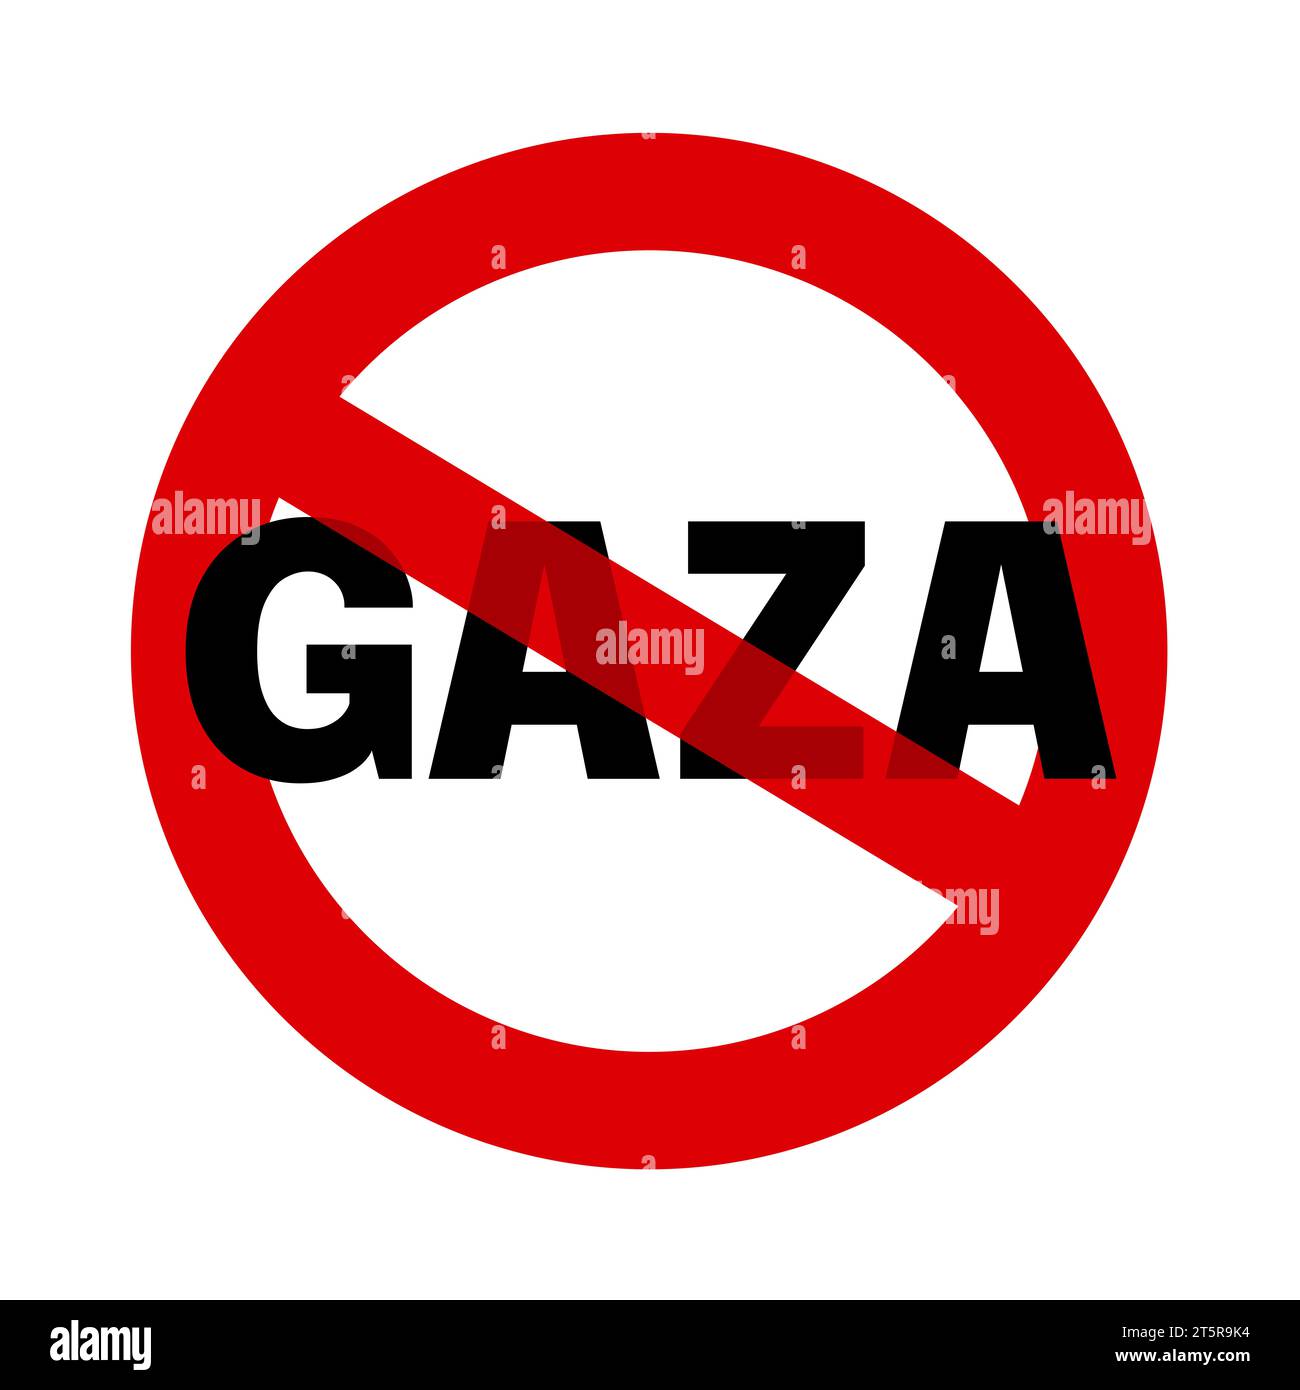 Gaza wird durchbrochen - Zerstörung, Ruine und Zerstörung palästinensischer Gebiete. Vektorillustration isoliert auf weiß. Stockfoto